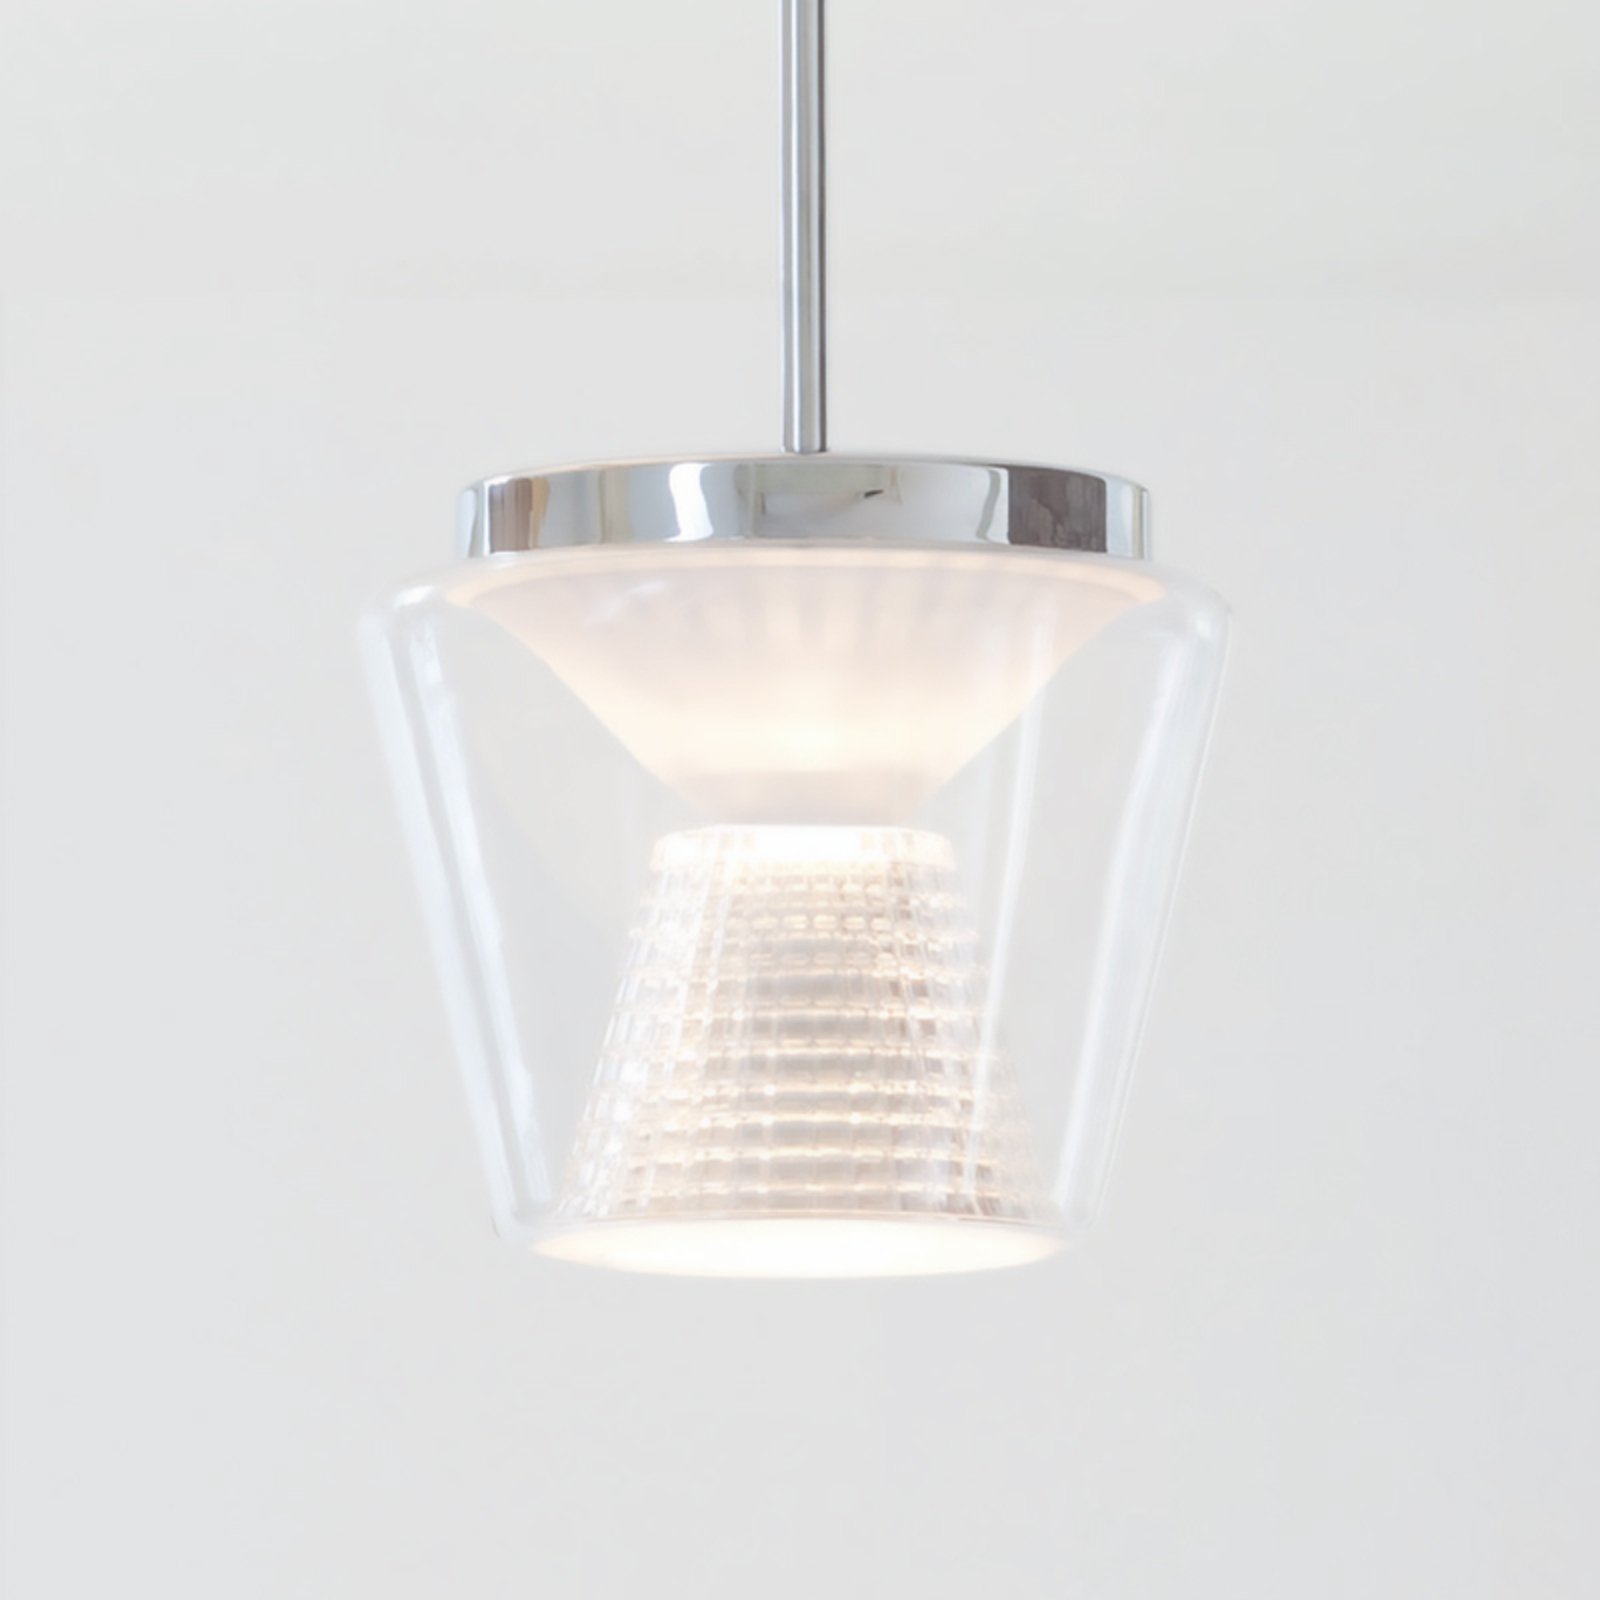 Lampada a sospensione LED Annex, vetro e cristallo